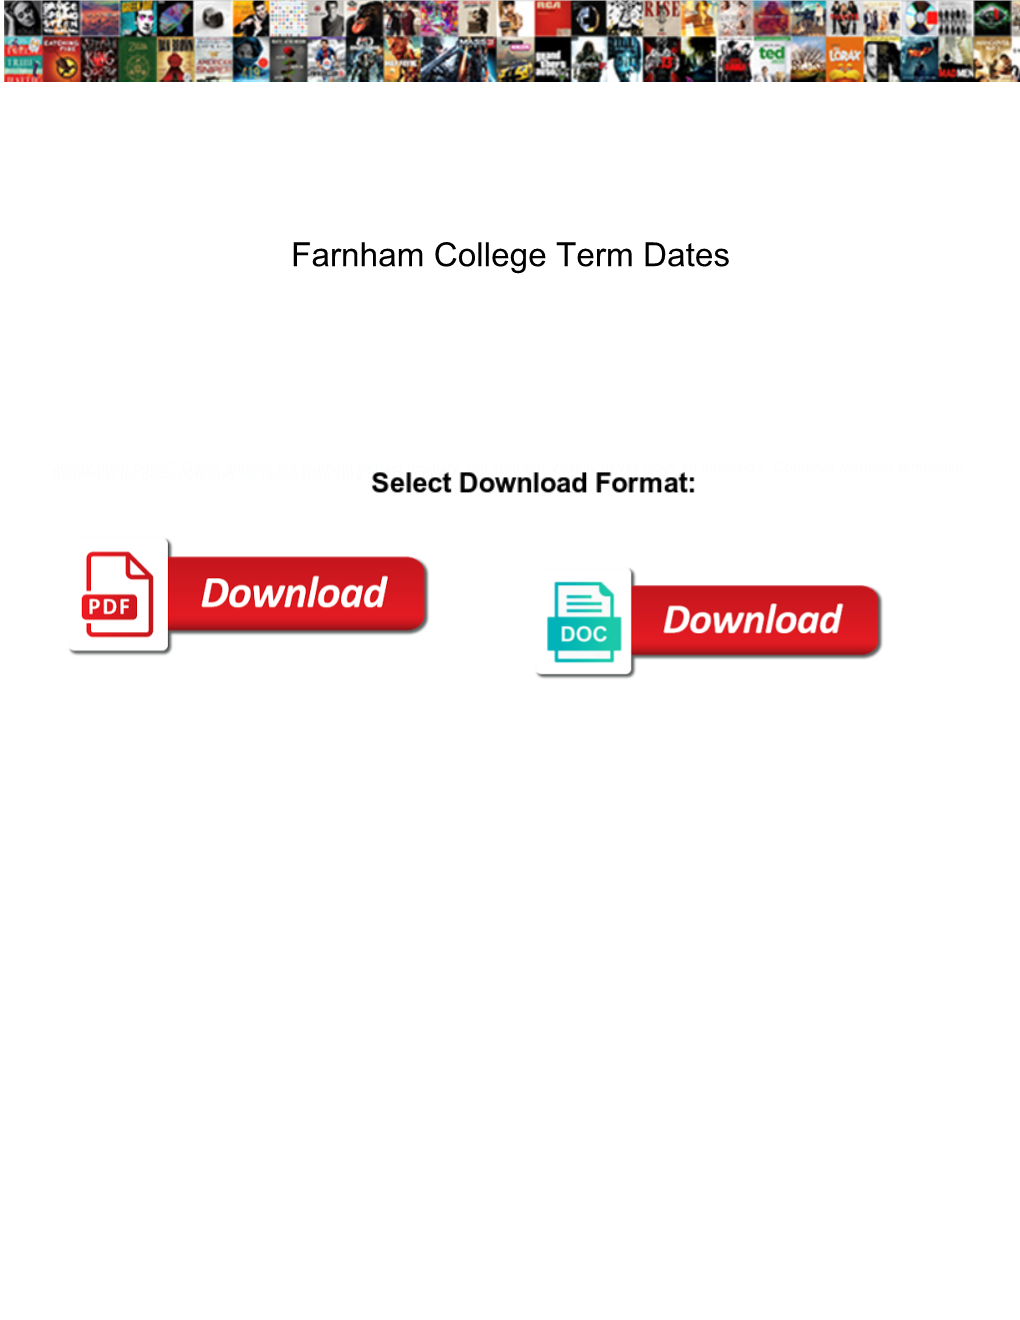 Farnham College Term Dates